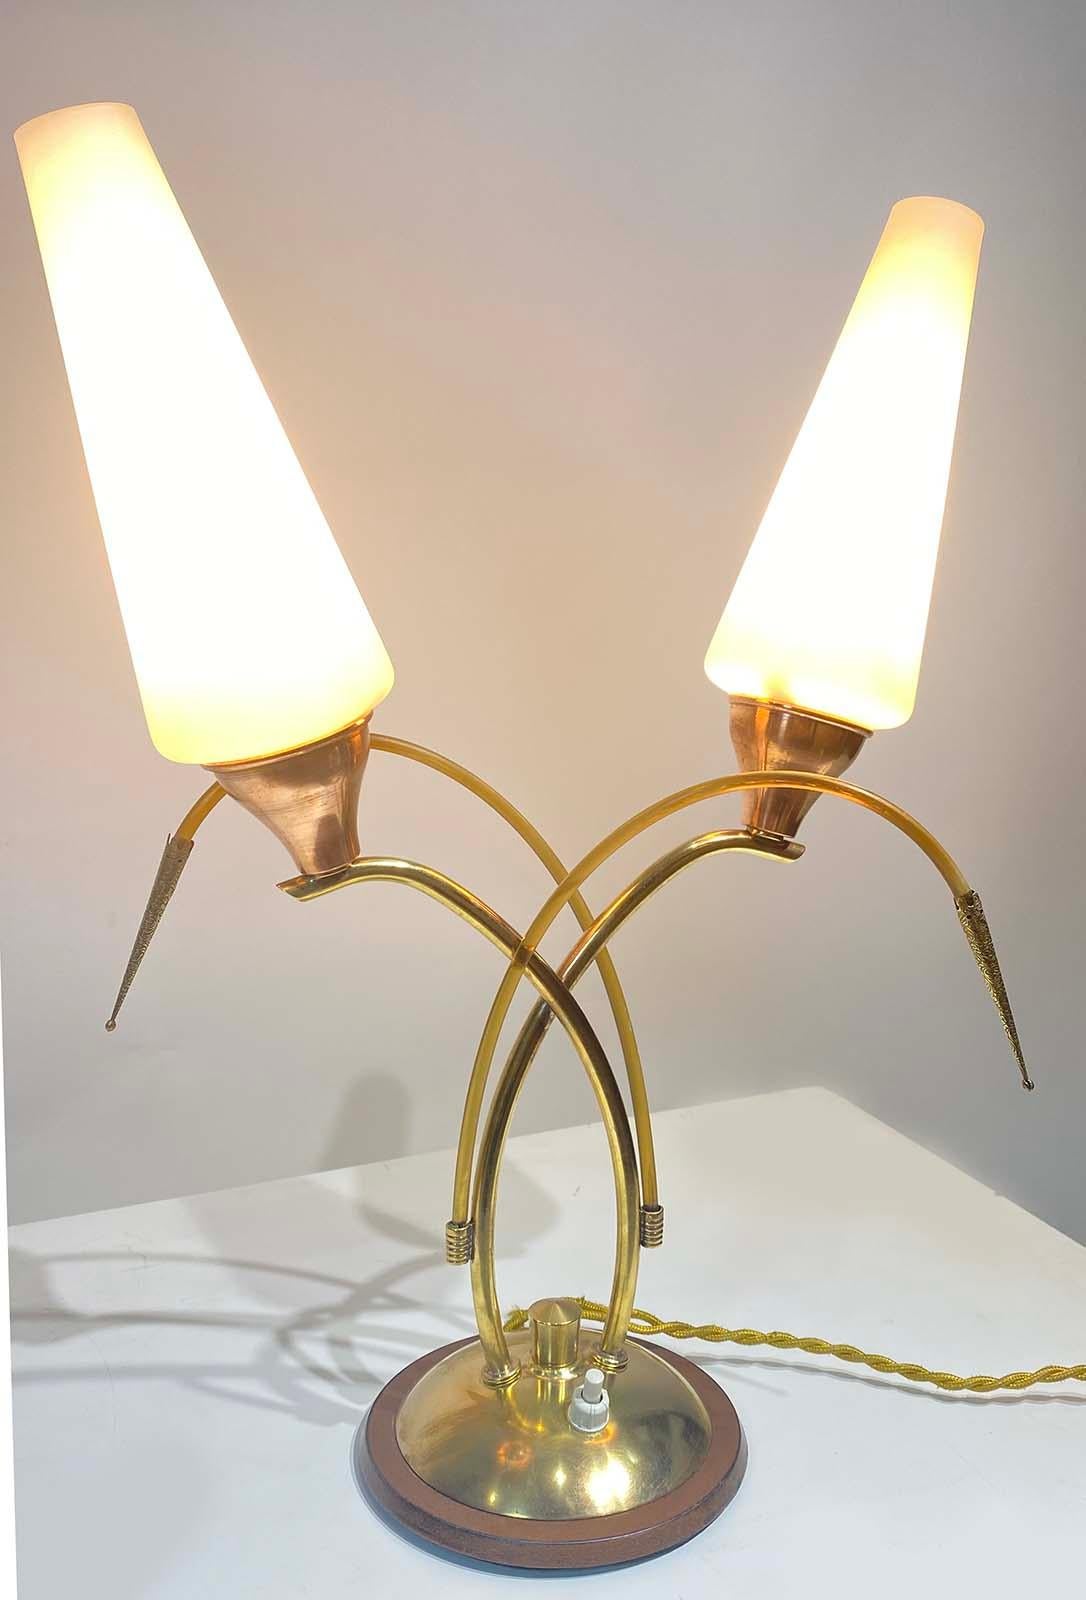 Belle lampe de table en laiton avec deux abat-jour en verre opalin, et 2 tiges décoratives, vers 1950.
 